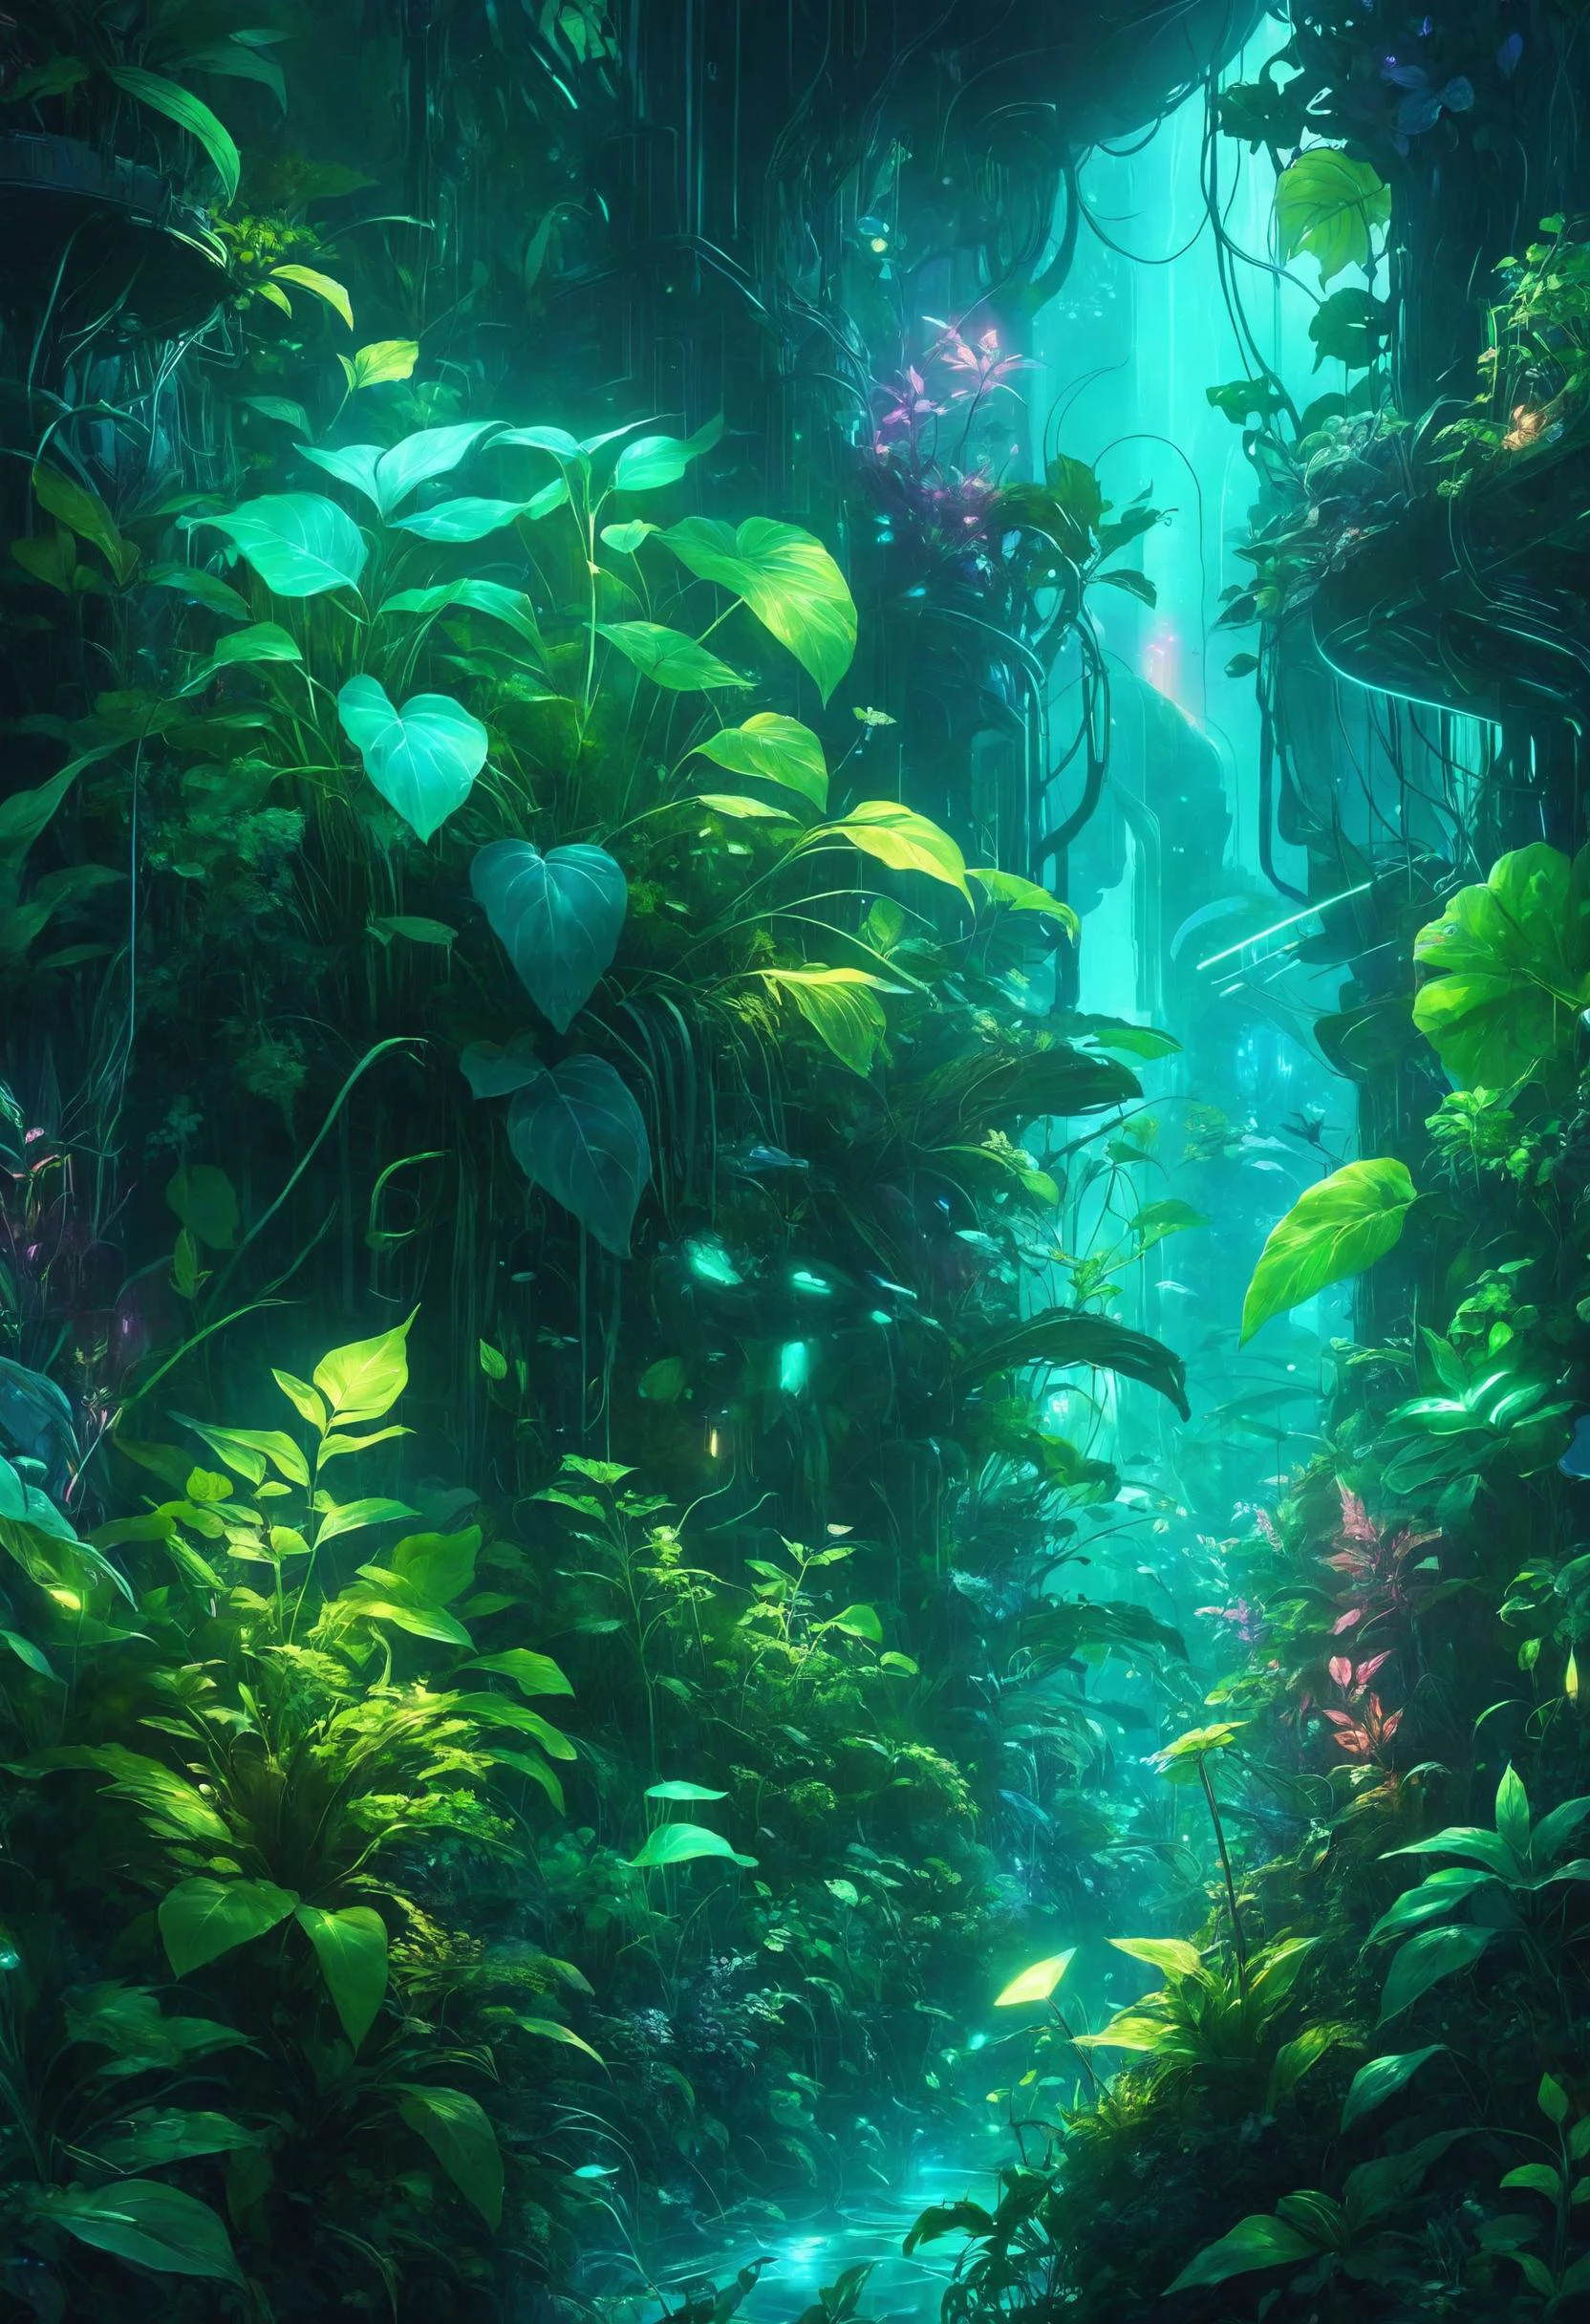 ป่าใต้ทะเลอันน่าหลงใหลที่ใบไม้ที่เรืองแสงของพืชโปร่งแสงกะพริบเป็นจังหวะเบา ๆ, เนรมิตแสงและเงาอันน่าหลงใหล, นักสืบ Cyberpunk ในเมืองที่สว่างไสวด้วยแสงนีออนในเบื้องหน้า, Dreamyvibes อาร์ตสไตล์, 